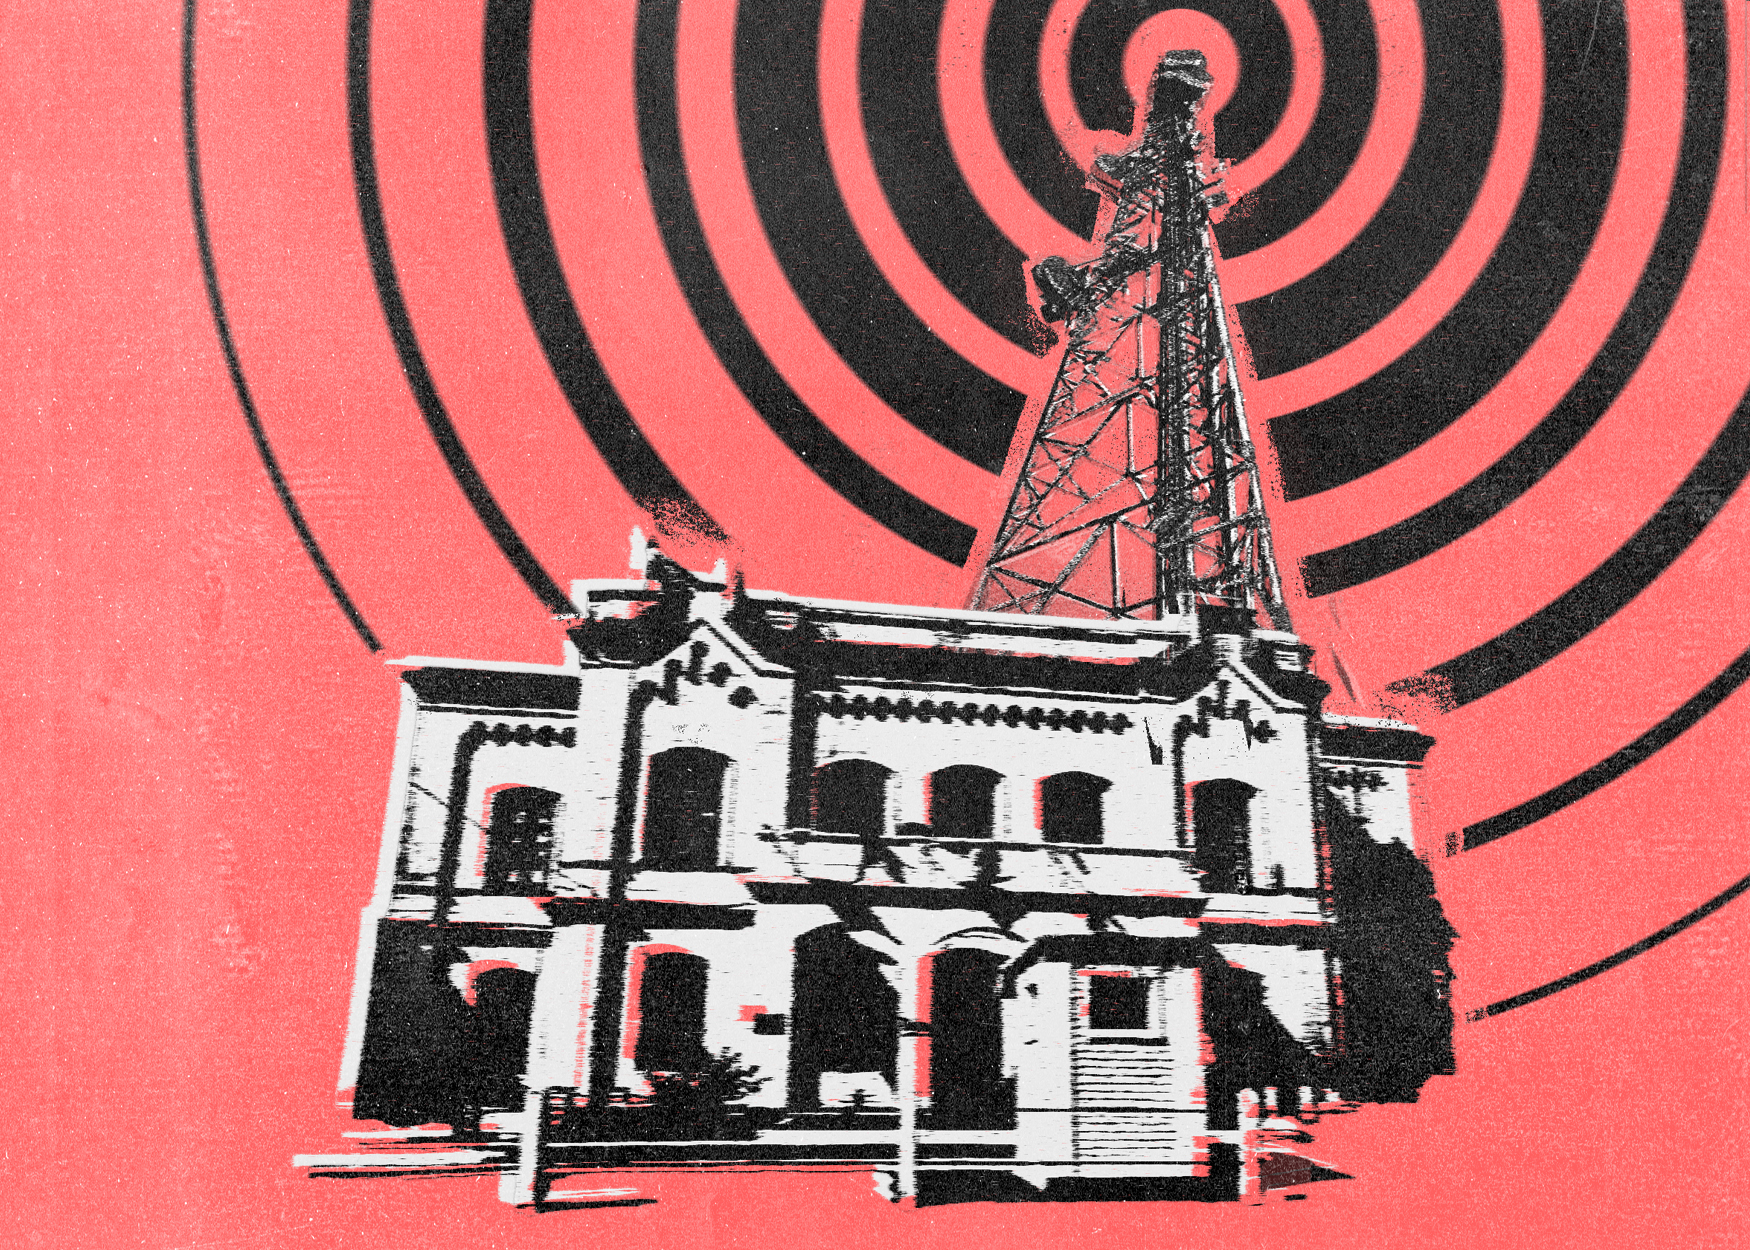 Hacer radio desde la cárcel: que la historia te la cuenten ellos